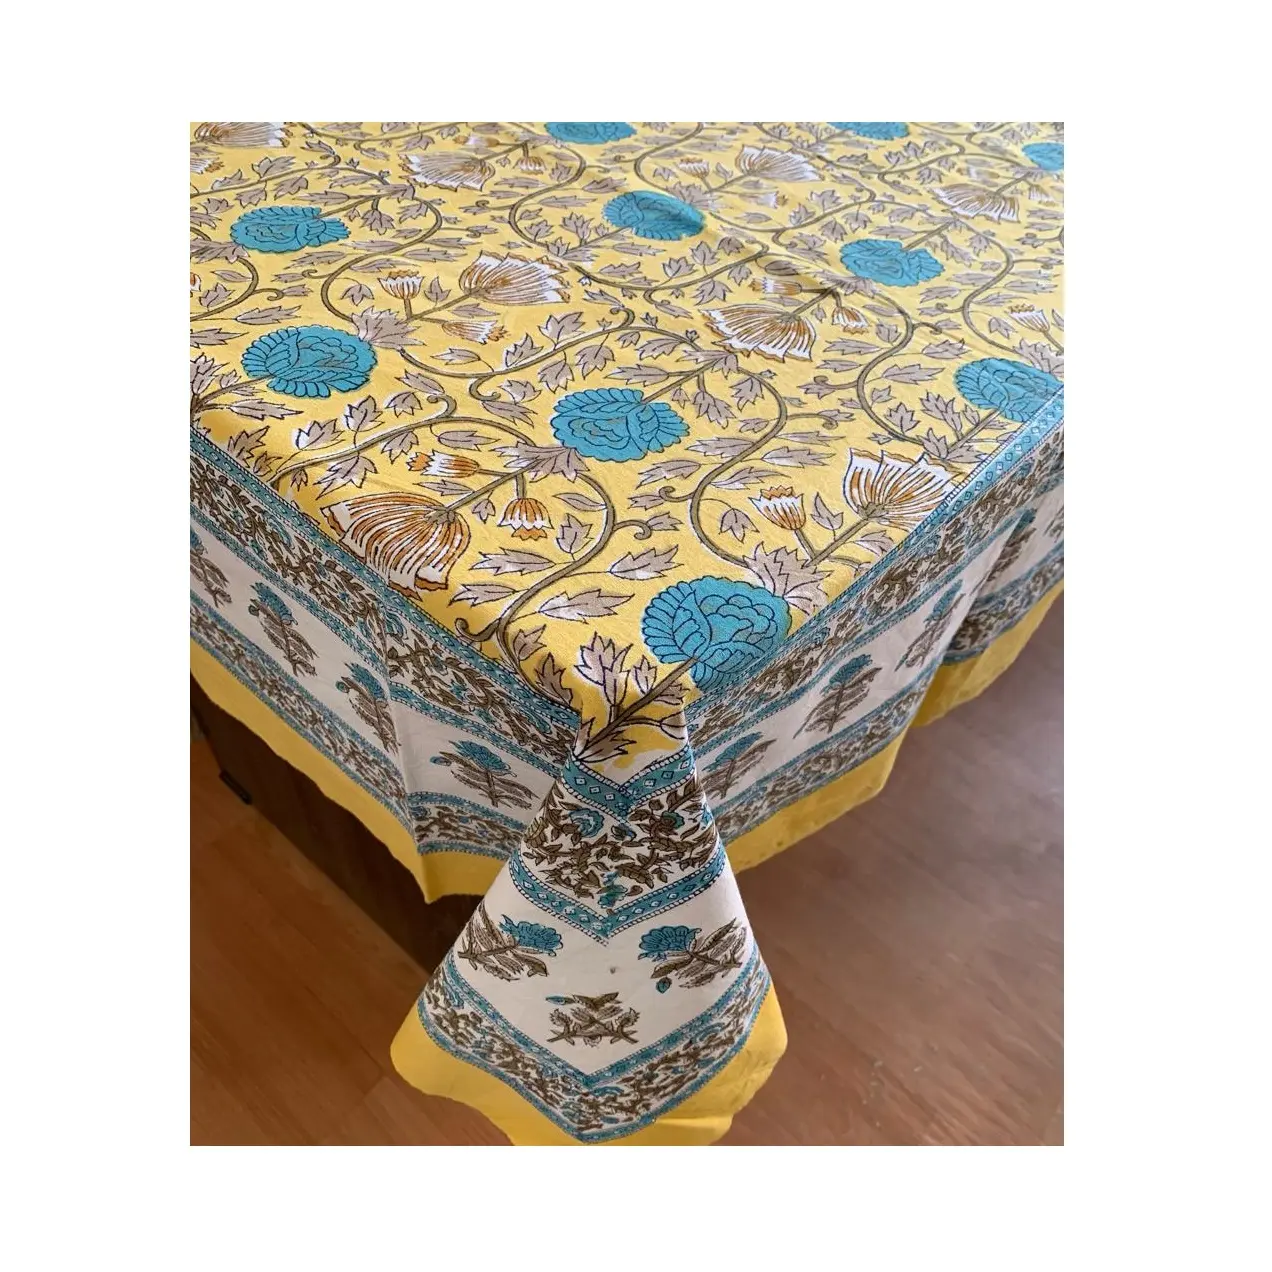 Penjualan grosir kain penutup meja dekoratif rumah desain bunga baru untuk ekspor menjual dengan harga terjangkau dari India